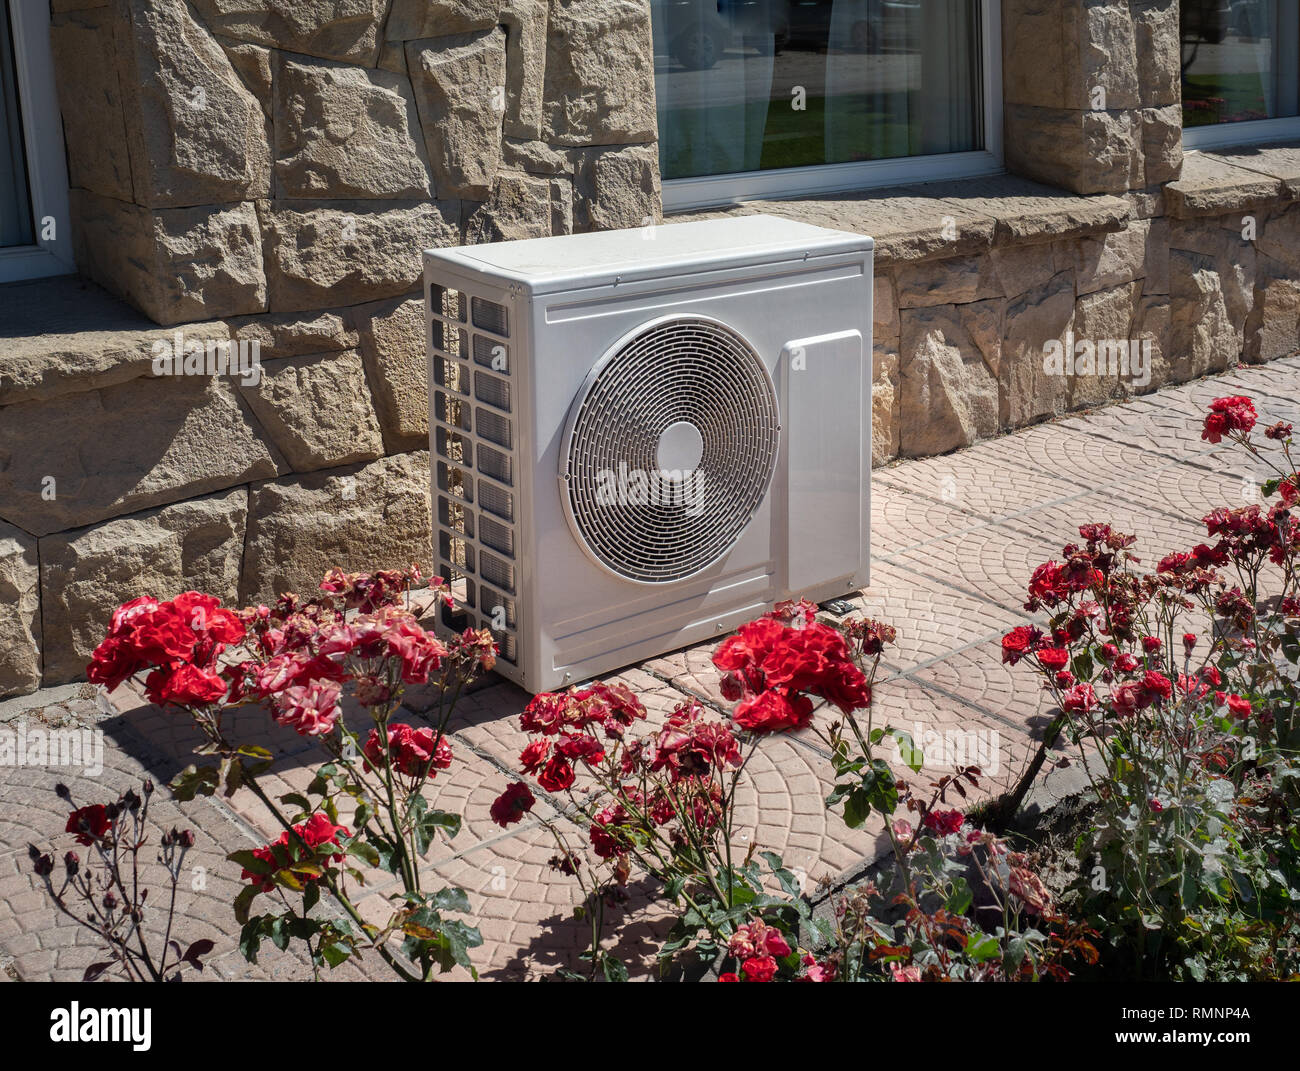 Hohe Effizienz moderner AC - Heizung wre, Energie sparen Lösung - horizontal, außerhalb eines Wohnhaus Stockfoto